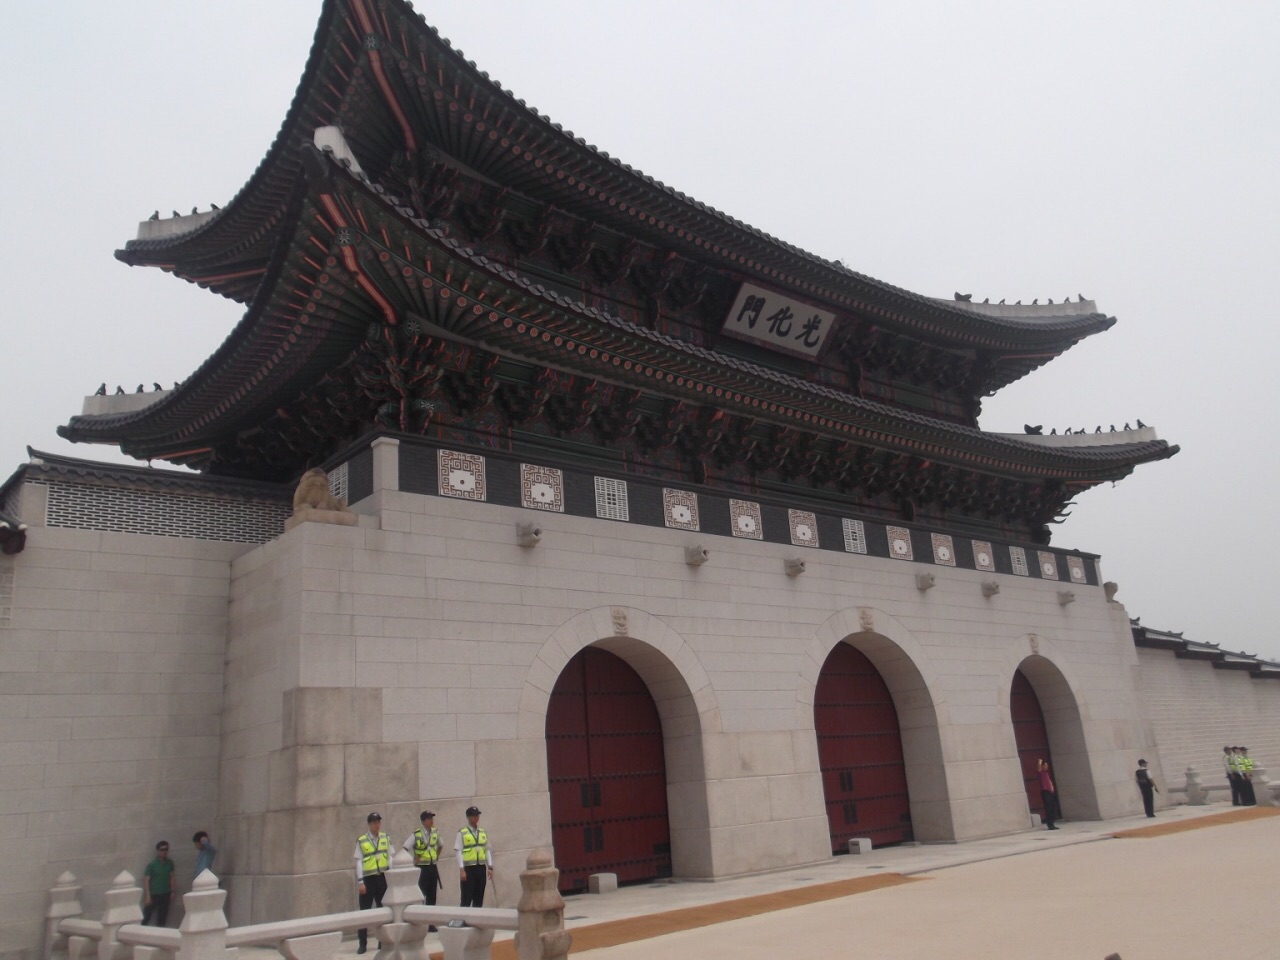 景福宫 景福宫，韩国的故宫。从宫殿面积、陈设和环境各方面都反映出当时附属国的地位。